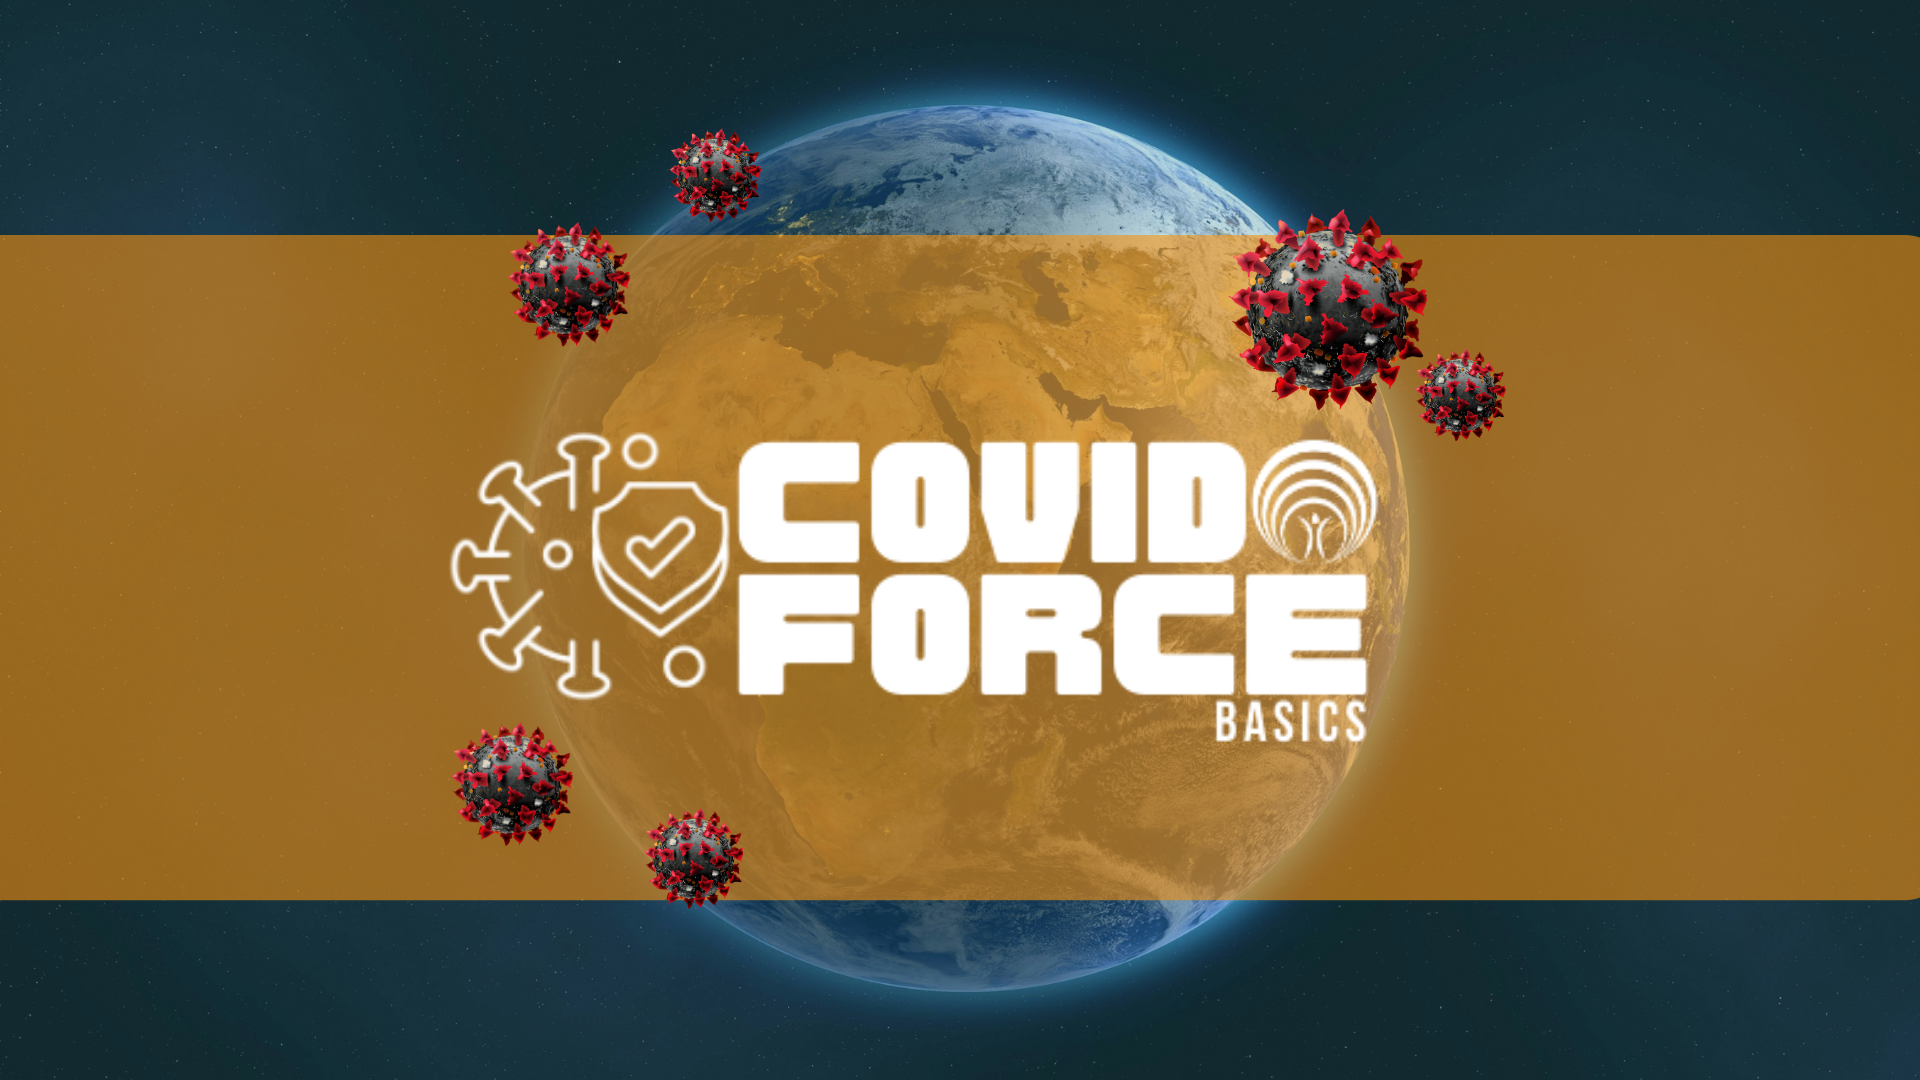 My COVID Force BASICS